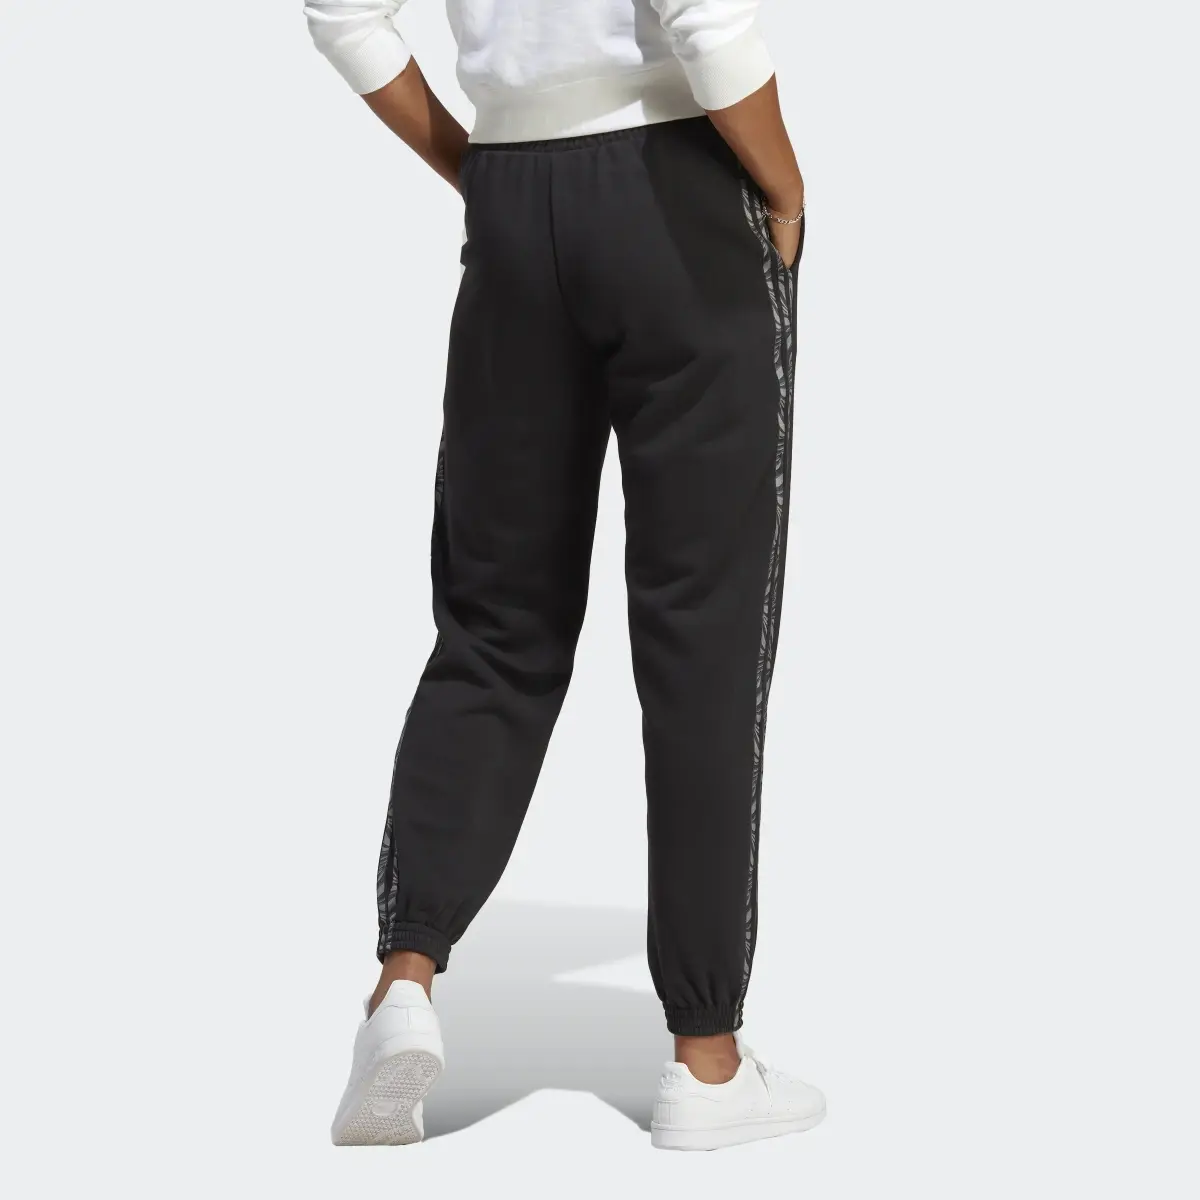 Adidas Pantalon de survêtement avec imprimé animal abstrait. 2